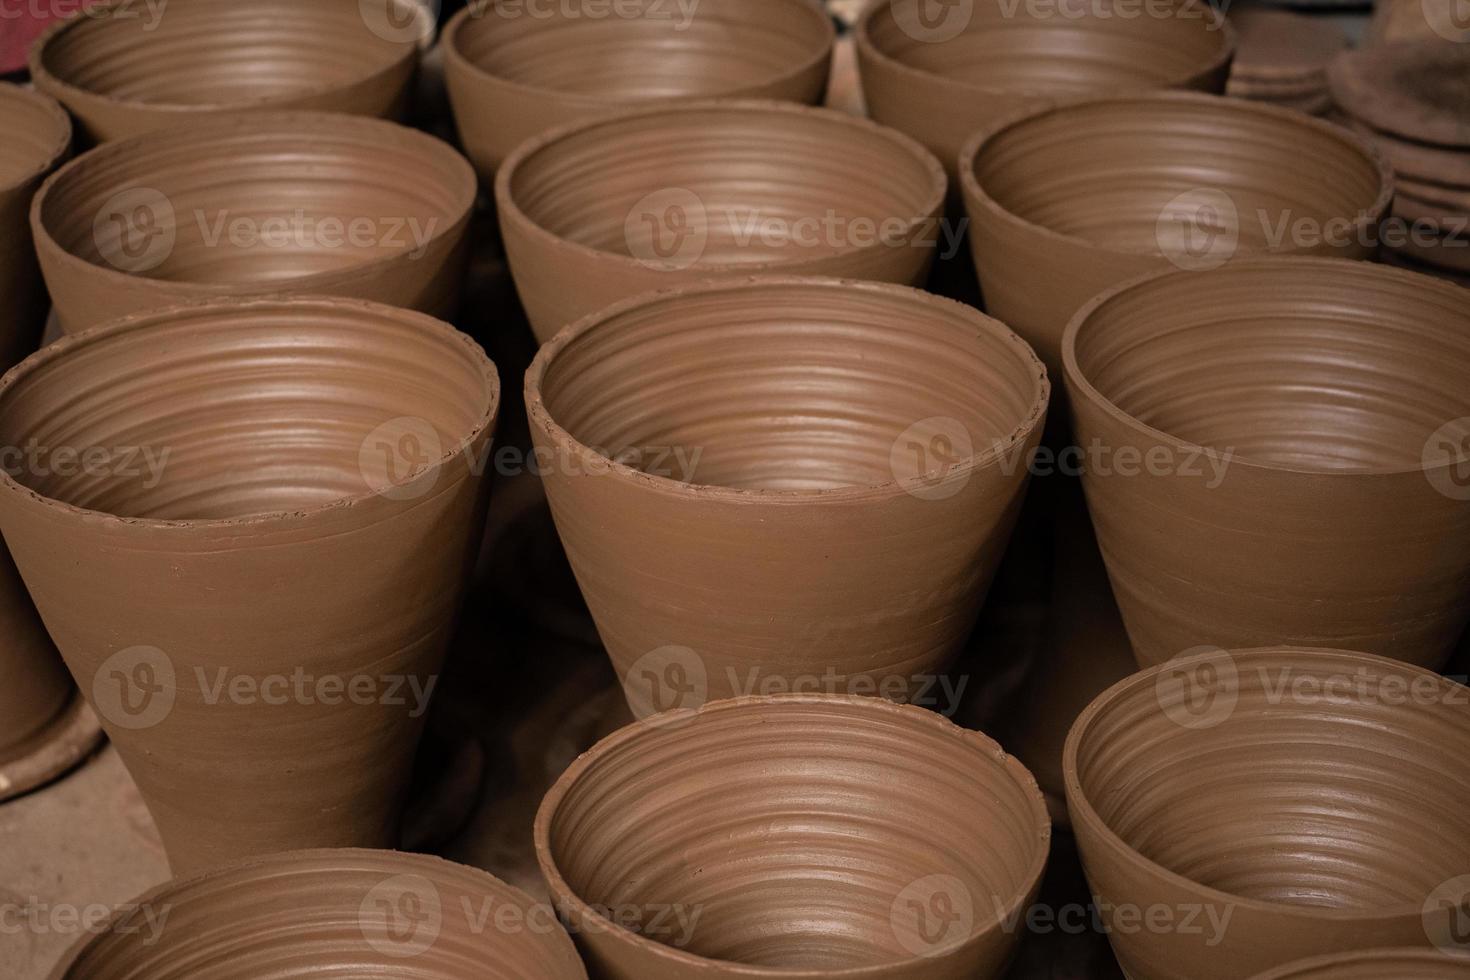 filas de artesanías de cerámica que aún son nuevas y aún están en proceso de elaboración. foto